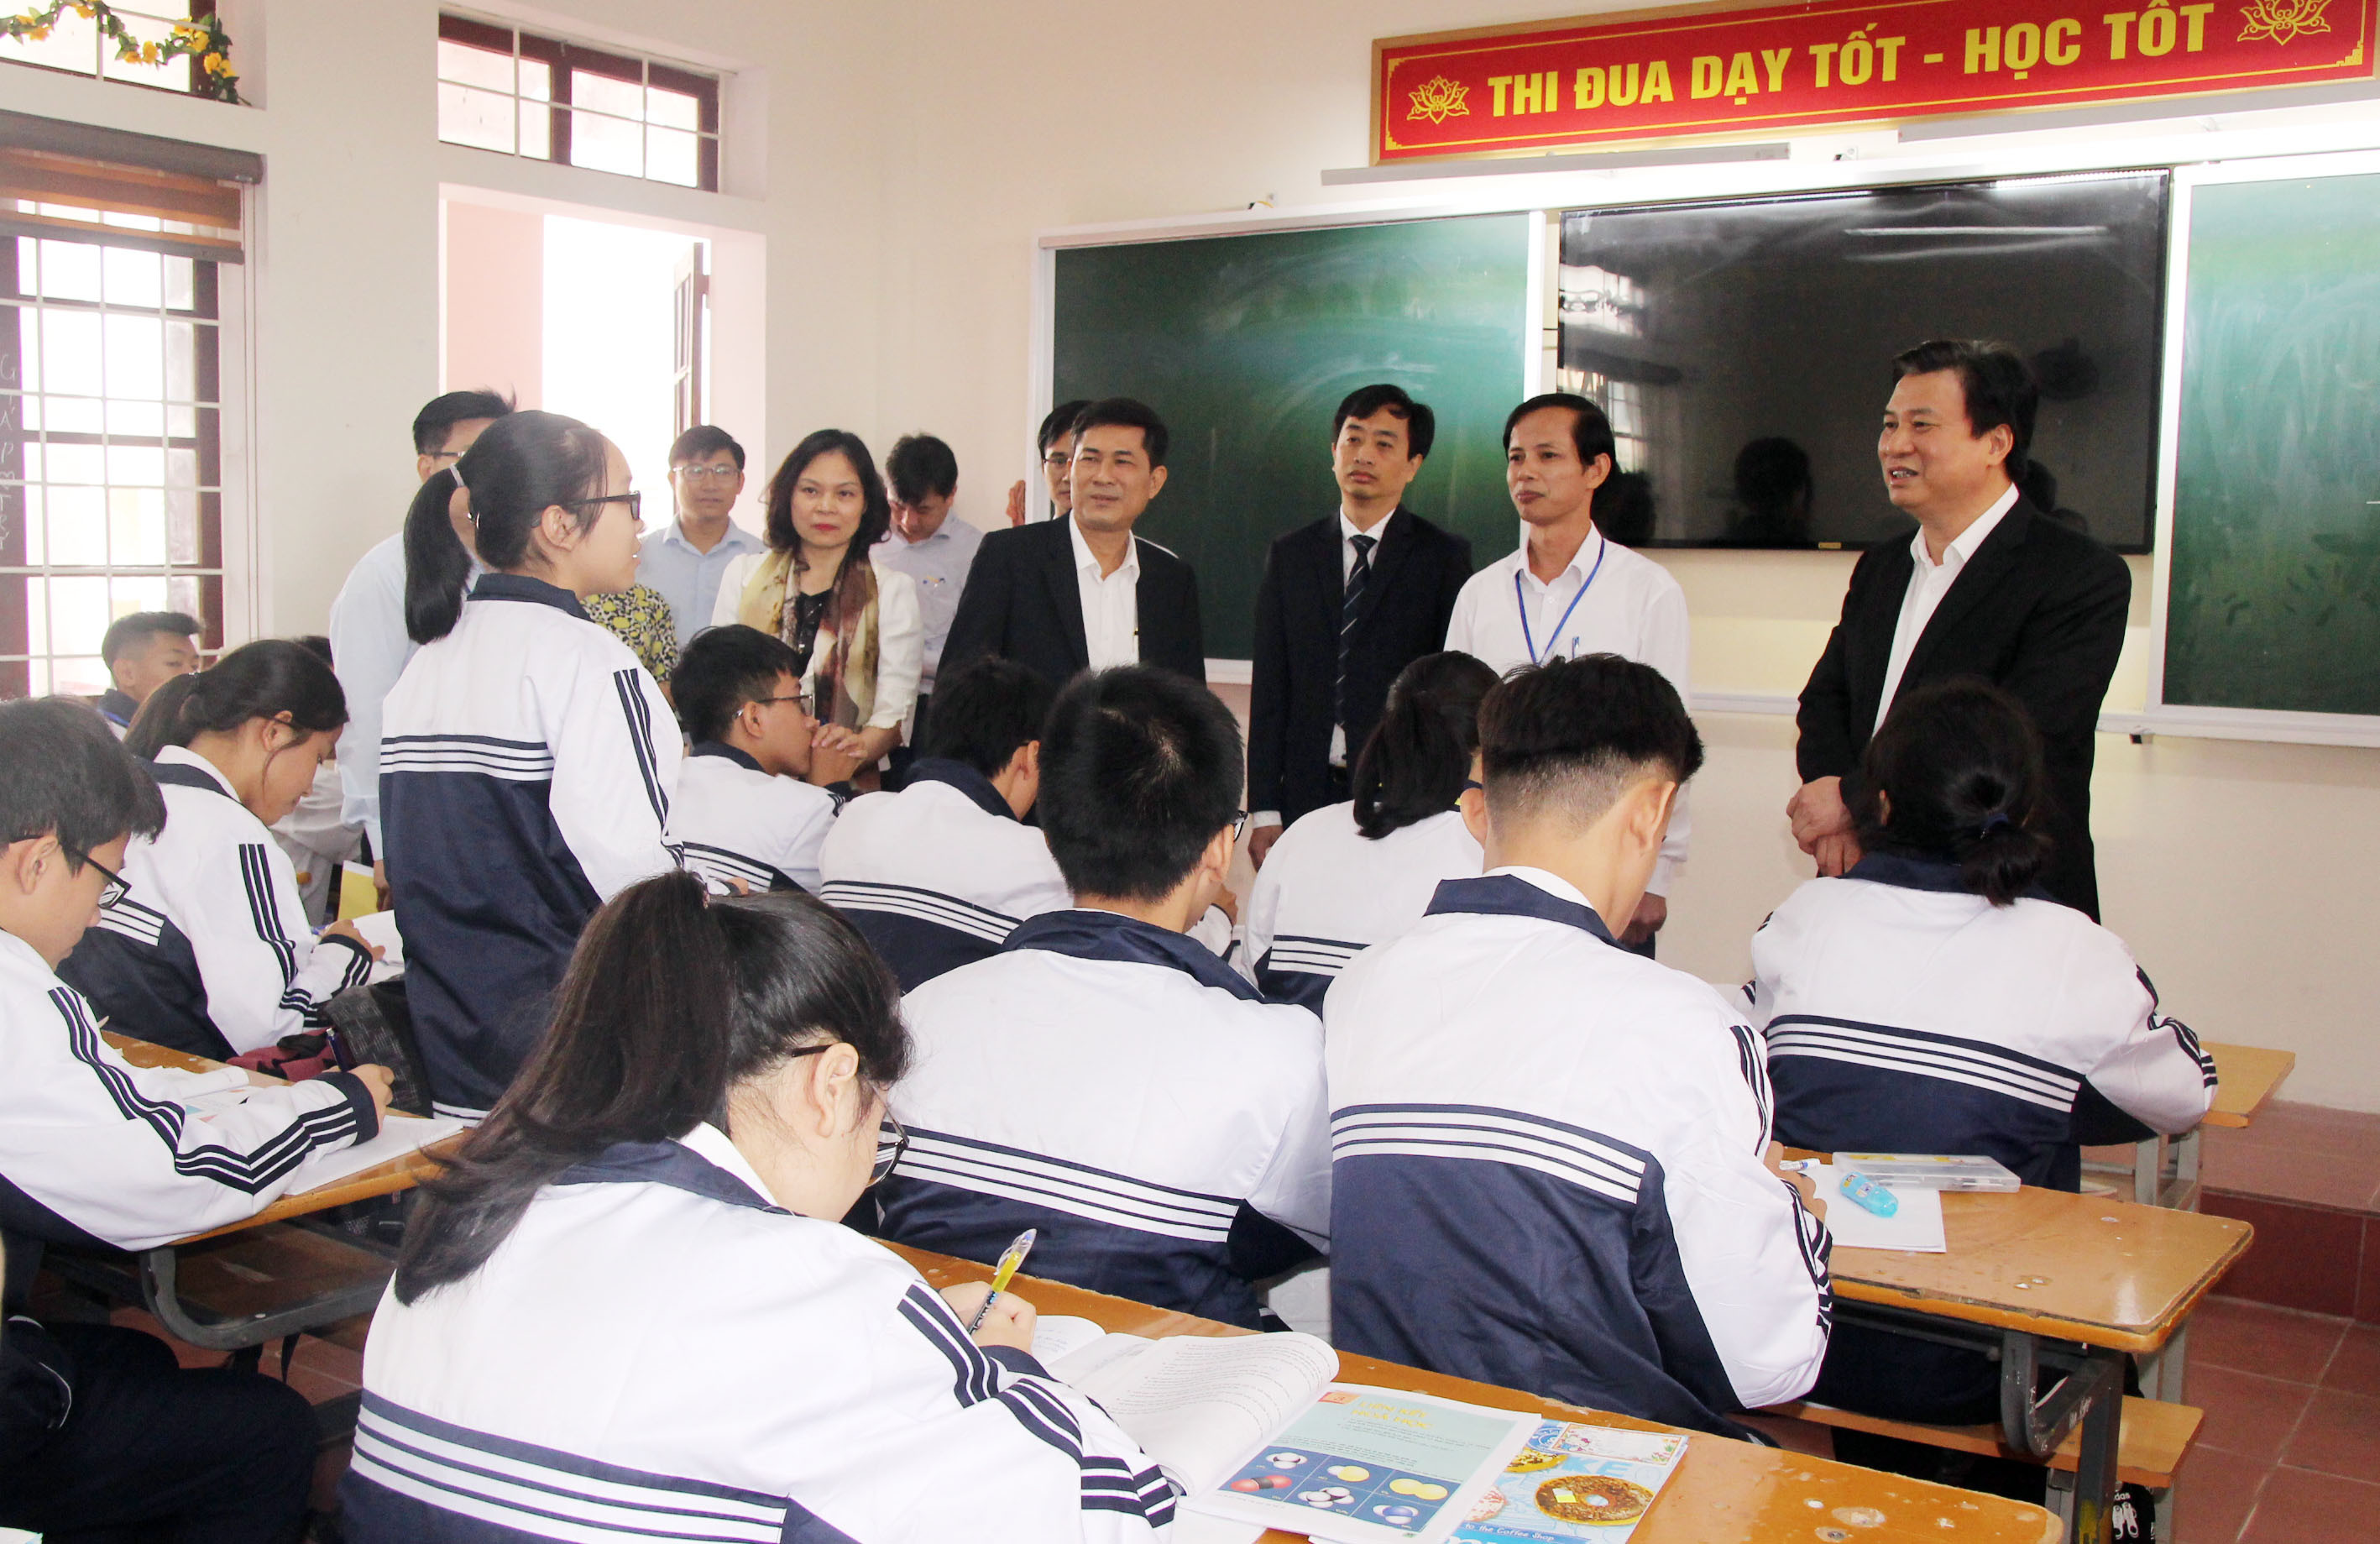 Thứ trưởng Nguyễn Hữu Độ trò chuyện với học sinh Trường THPT Huỳnh Thúc Kháng. Ảnh: MH